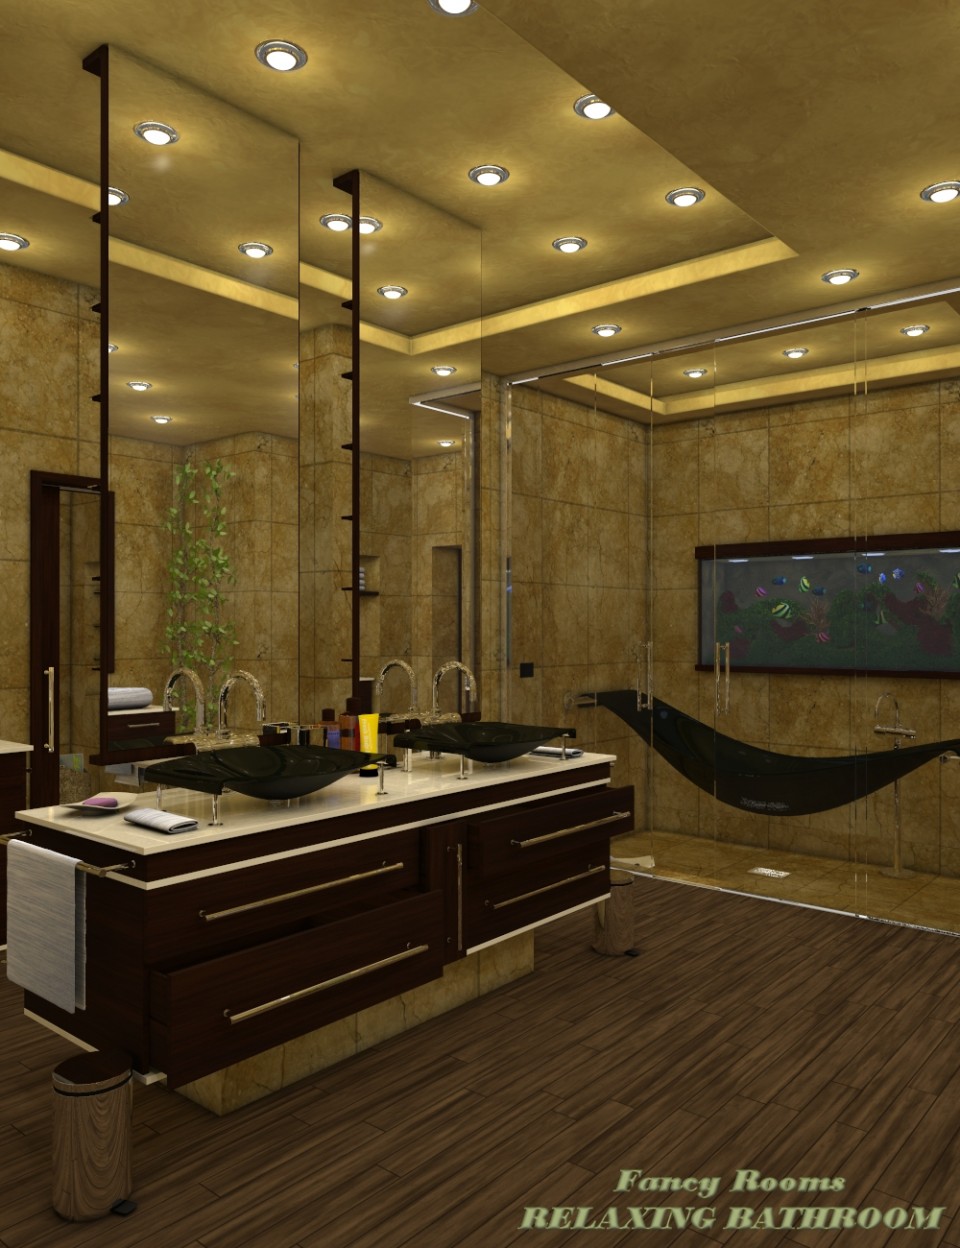 Fancy Rooms - Relaxing Bathroom